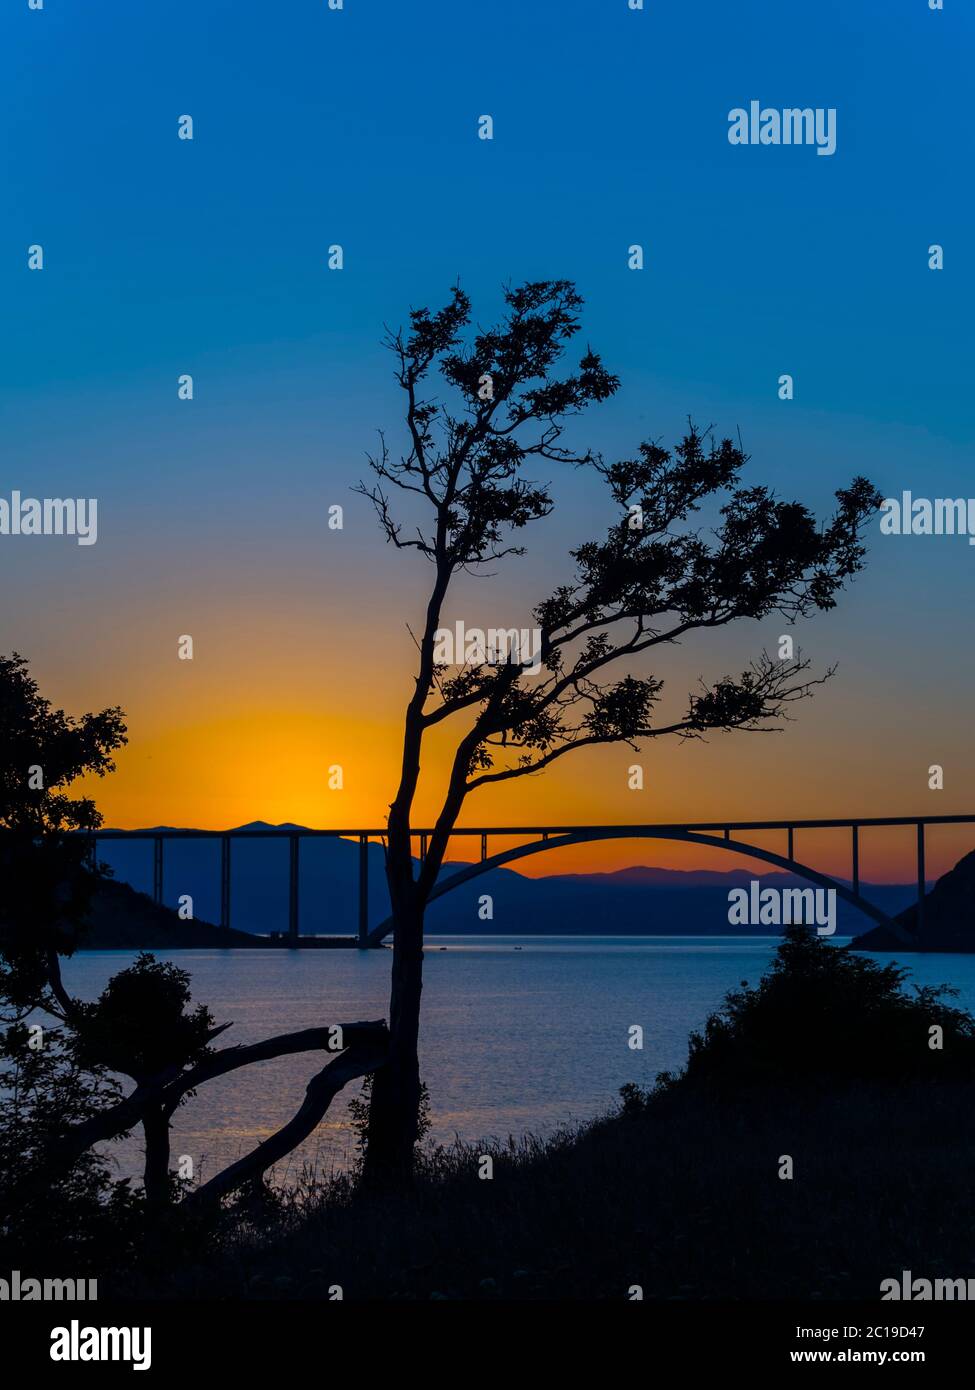 Sunset dusk landscape bridge mainland to island Krk Croatia Stock Photo